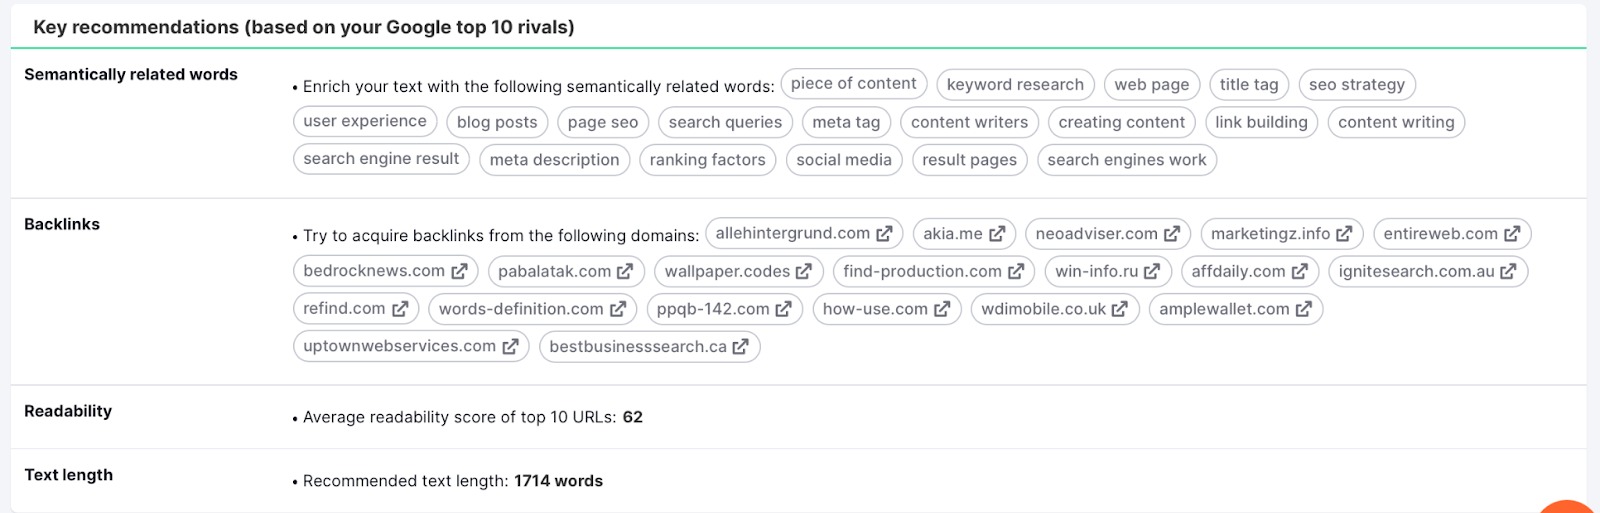 SEO Content Template Tool. Die wichtigsten Empfehlungen auf Basis Ihrer Mitbewerber in den Top 10 für semantisch verwandte Wörter, Backlinks, Lesbarkeit und Textlänge. 